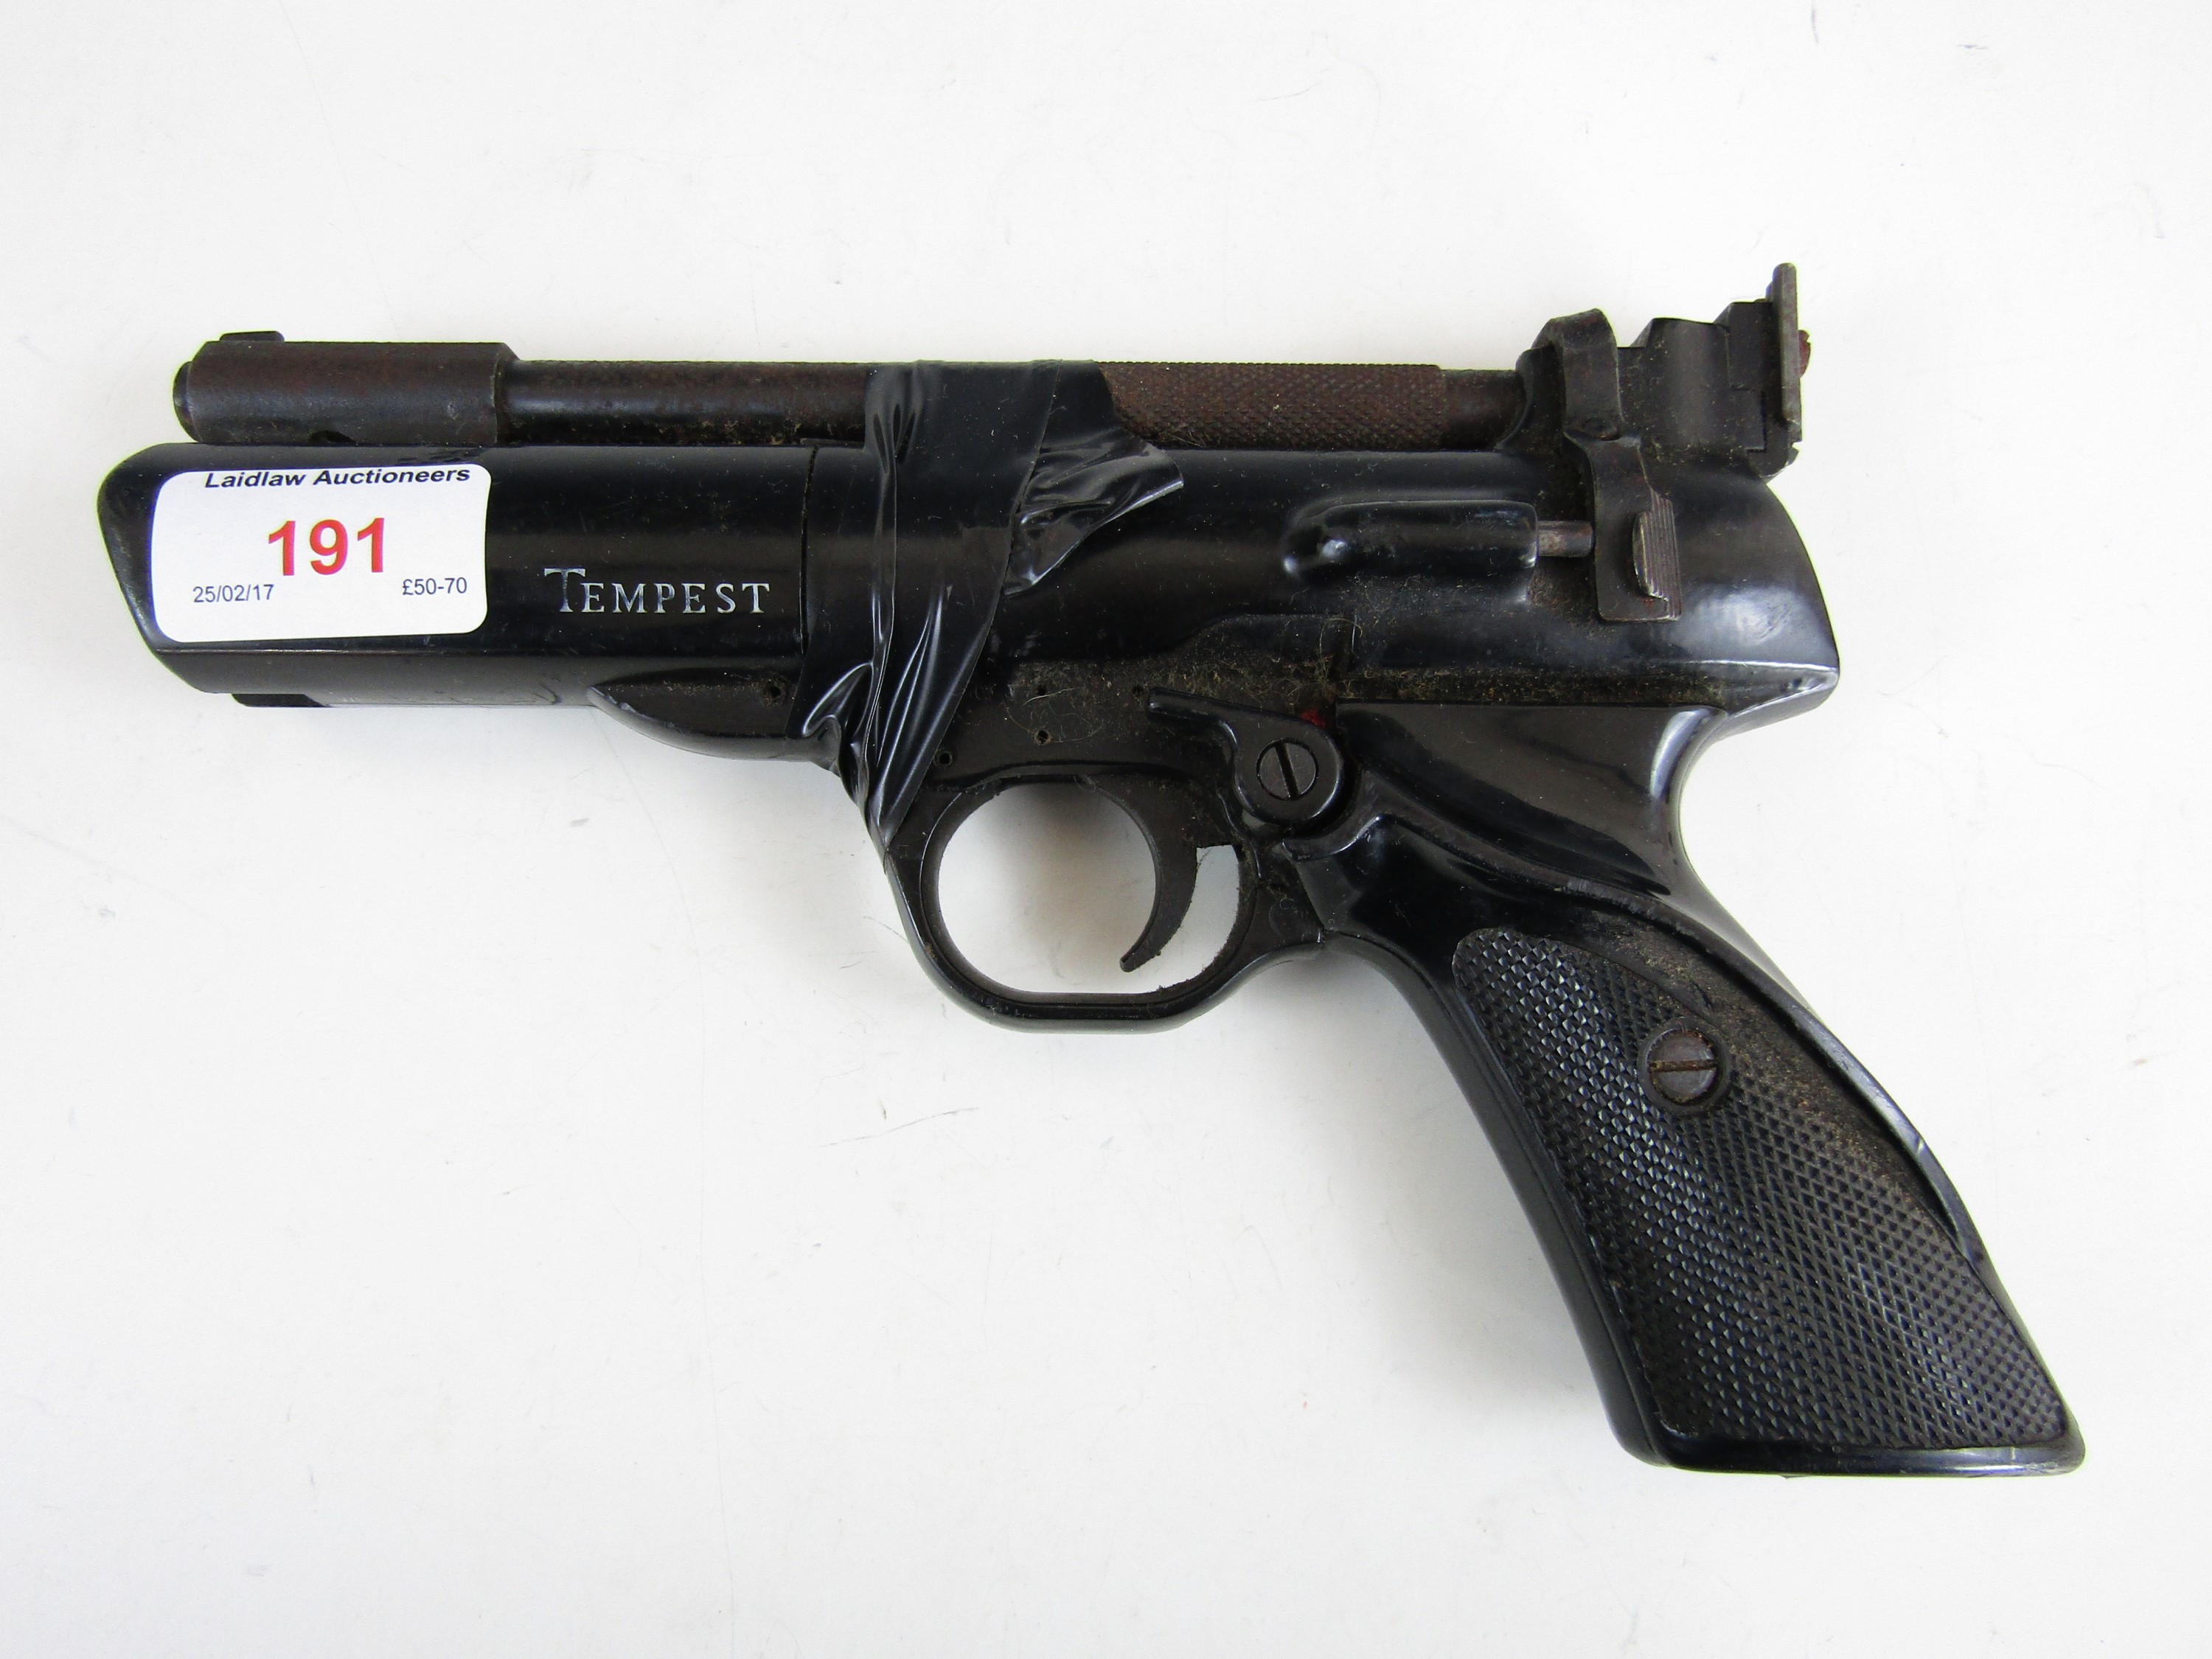 A Webley & Scott Tempest .22 calibre air pistol